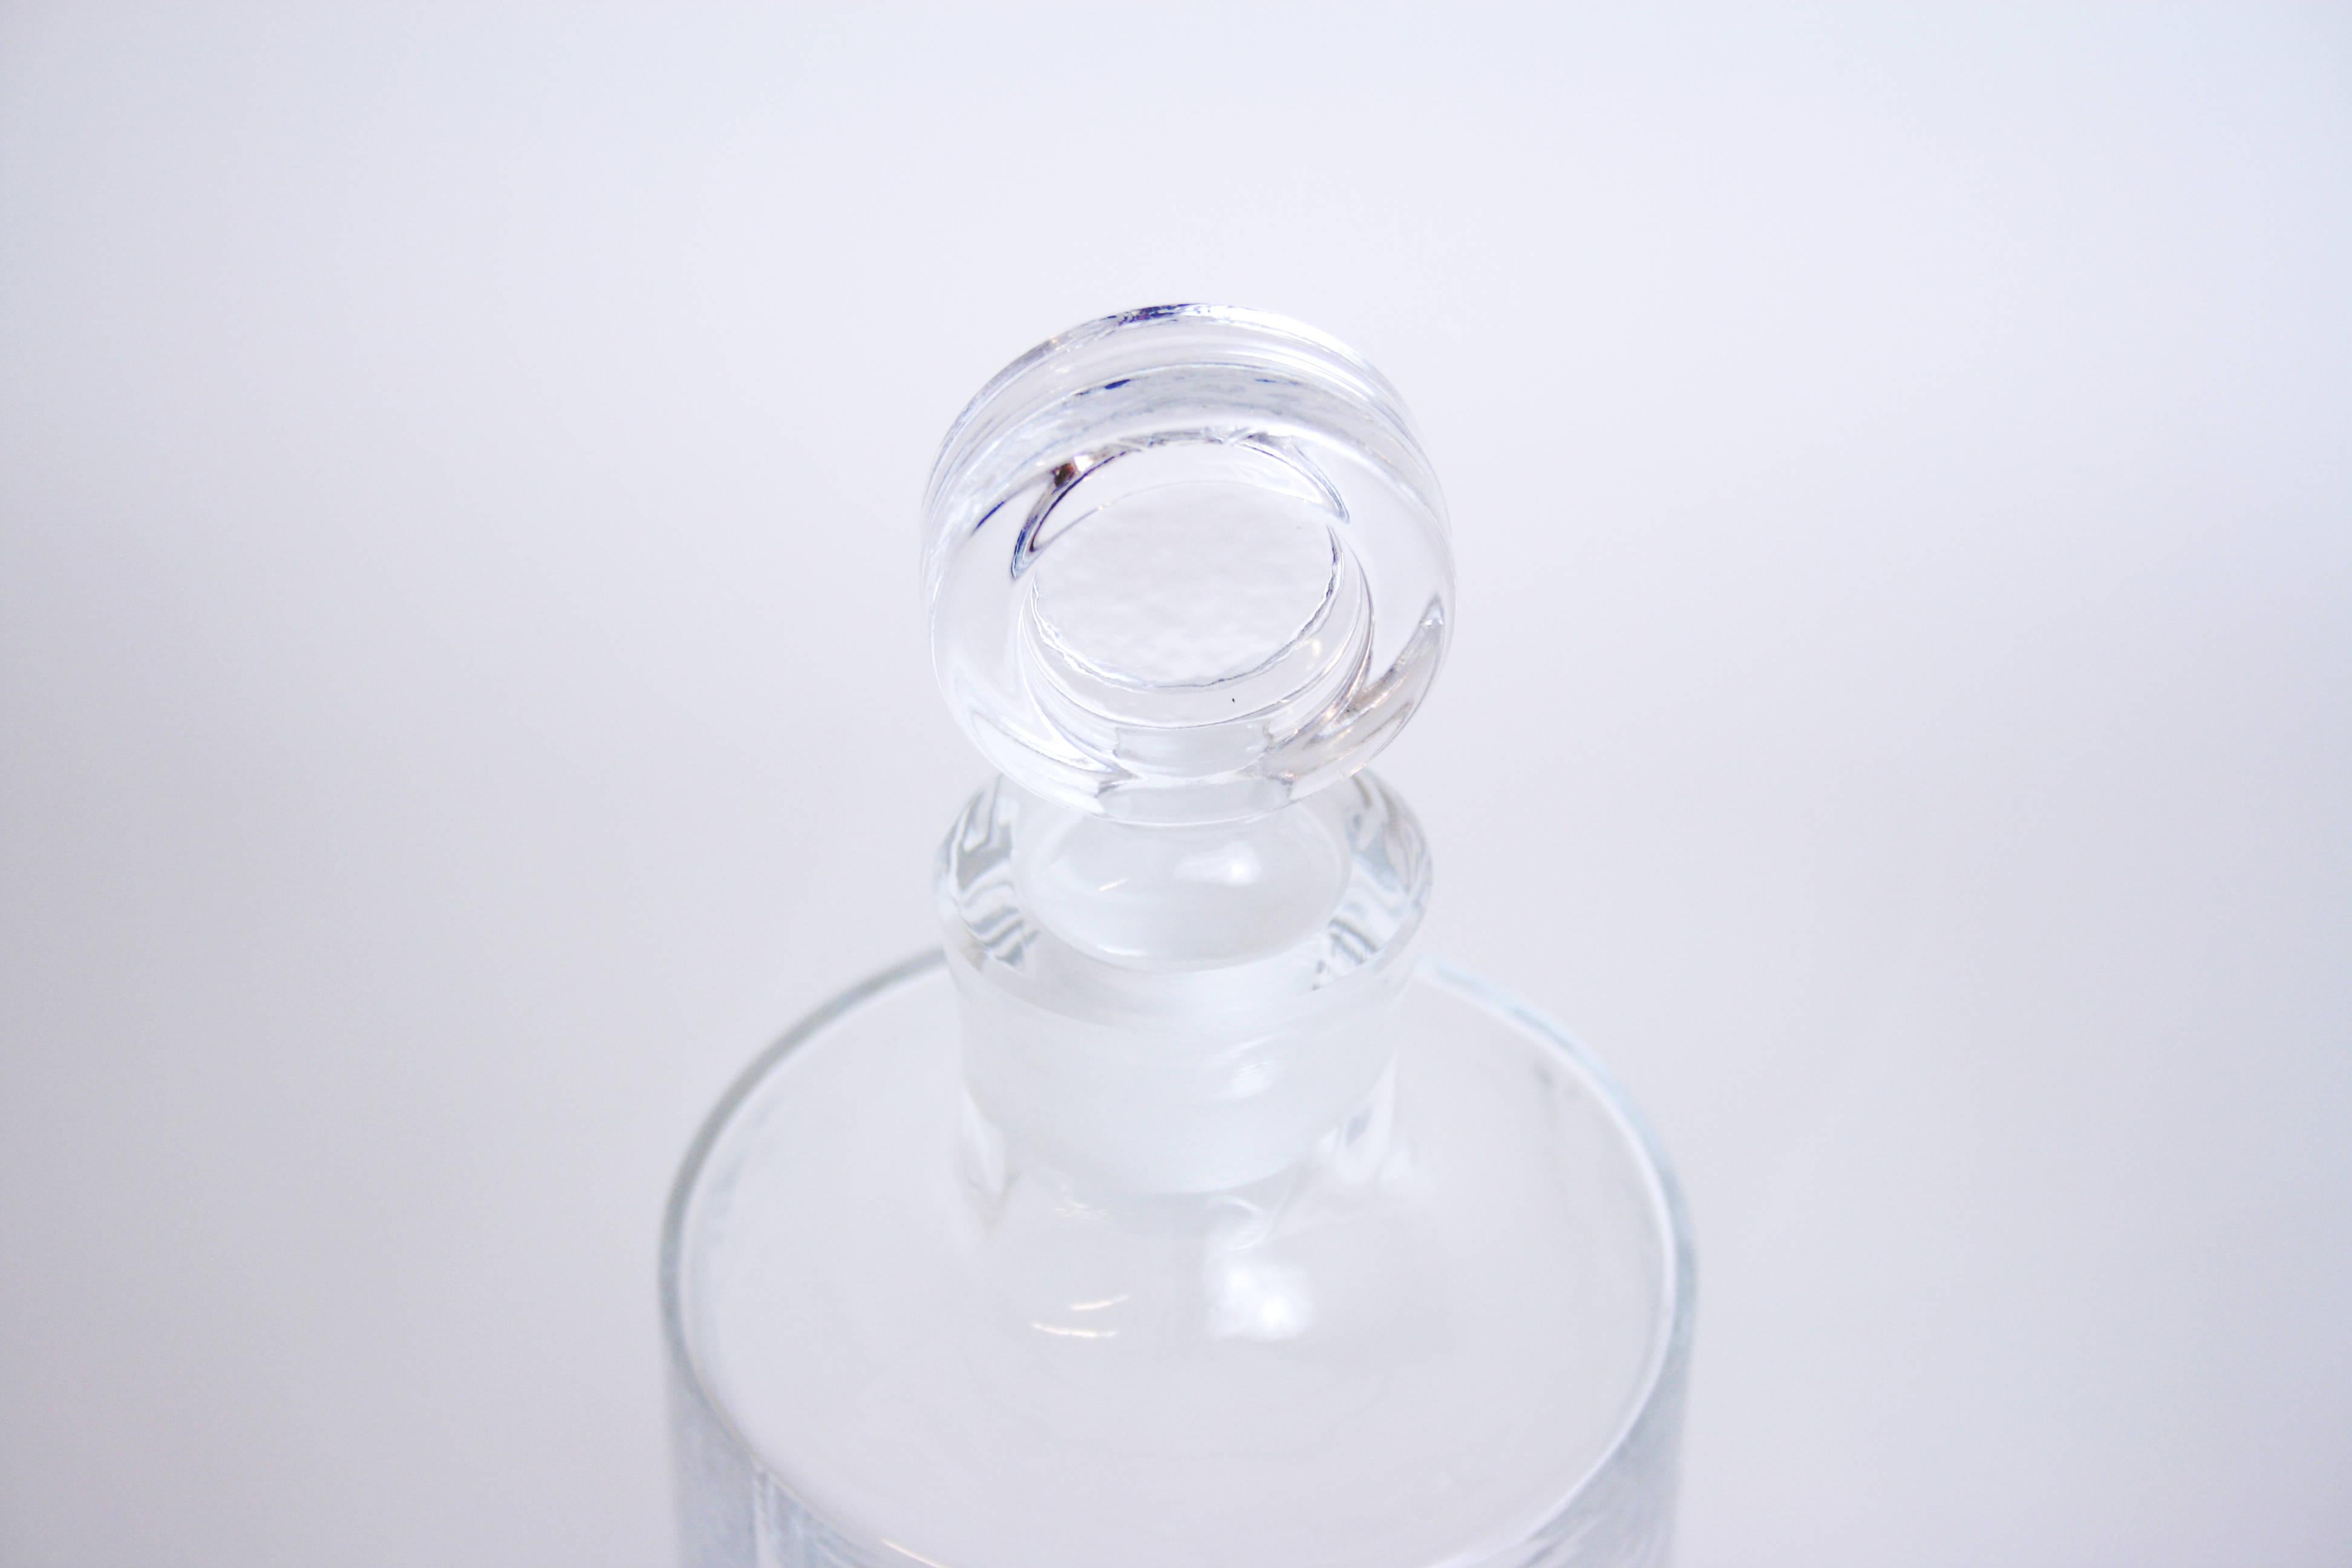 Flasche mit Stopfen Riedel Austria Designglas, Wien, 1980er Jahre. Eine der seltenen Flaggen dieses großen Herstellers, dessen Innovationen die Glas- und Trinkkultur revolutioniert haben. Dieses hochwertige Objekt ist noch in nahezu makellosem